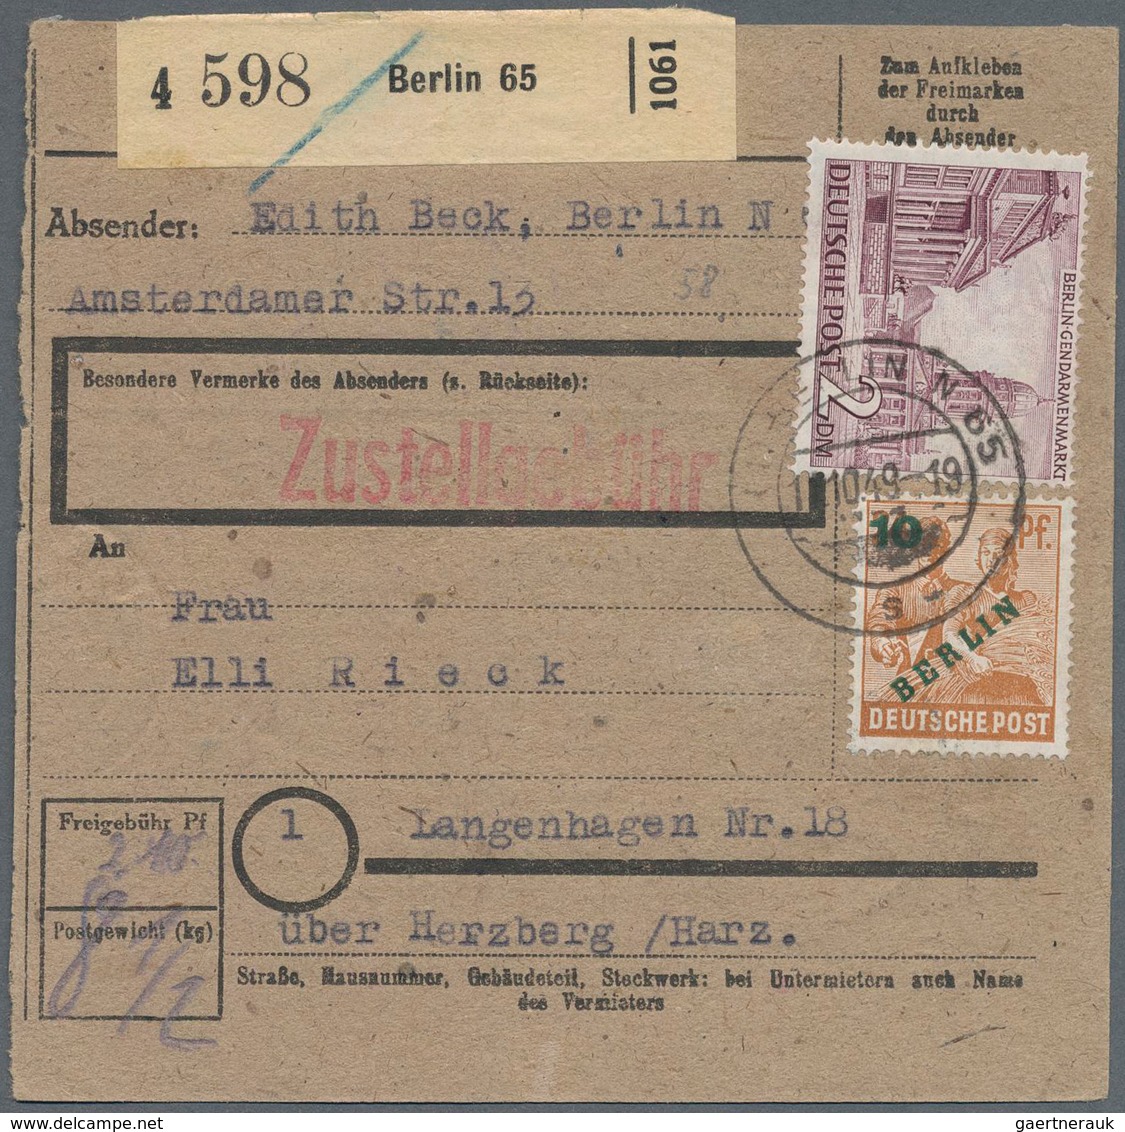 Berlin: 2 DM Bauten Mit 10 Pf. Grünaufdruck Zusammen Auf Paketkarte Ab Berlin N65 Vom 12.10.49 Nach - Covers & Documents